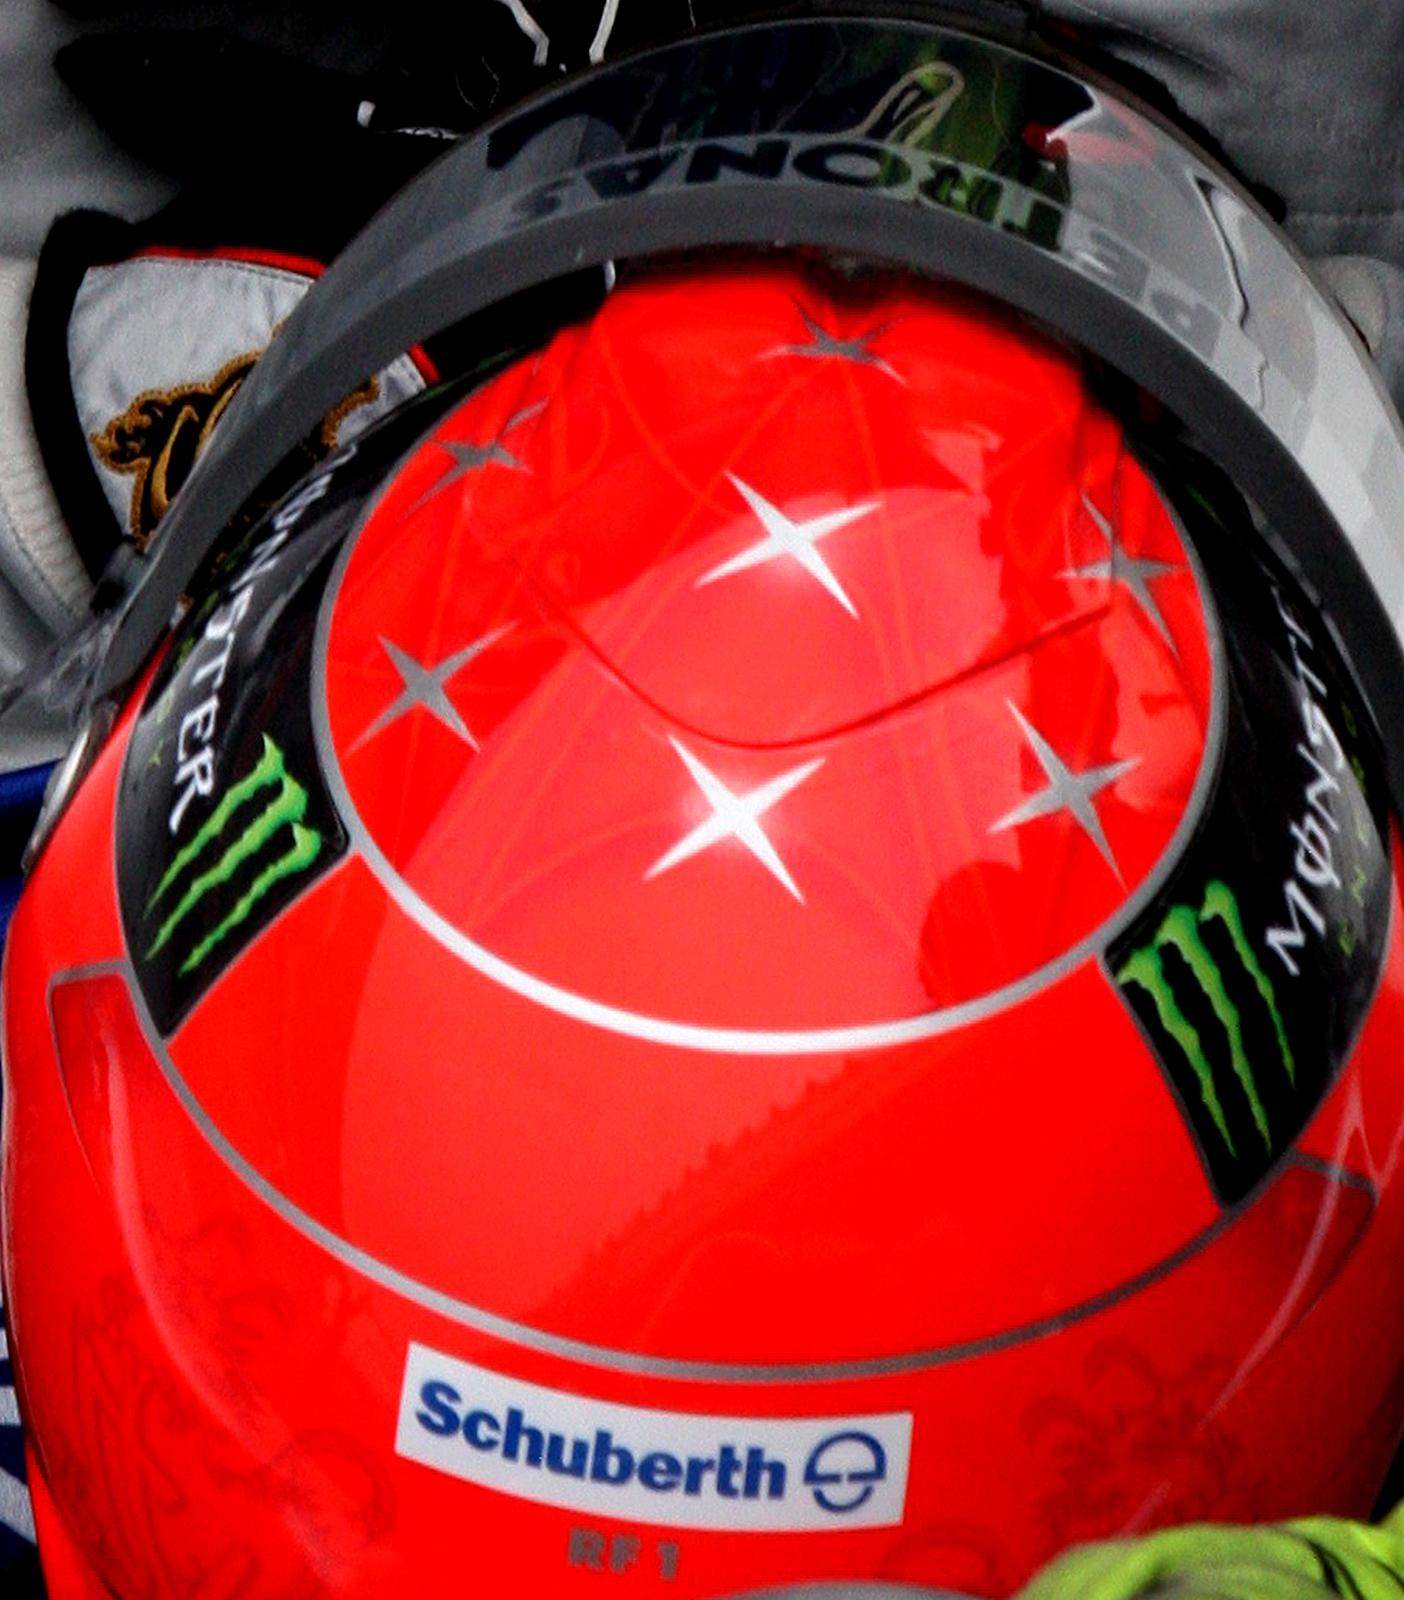 Last Dance 1- Michael Schumacher Formel 1 Mercedes, Rot, Stilllebenfoto, Rennen (Zeitgenössisch), Photograph, von Laurent Campus